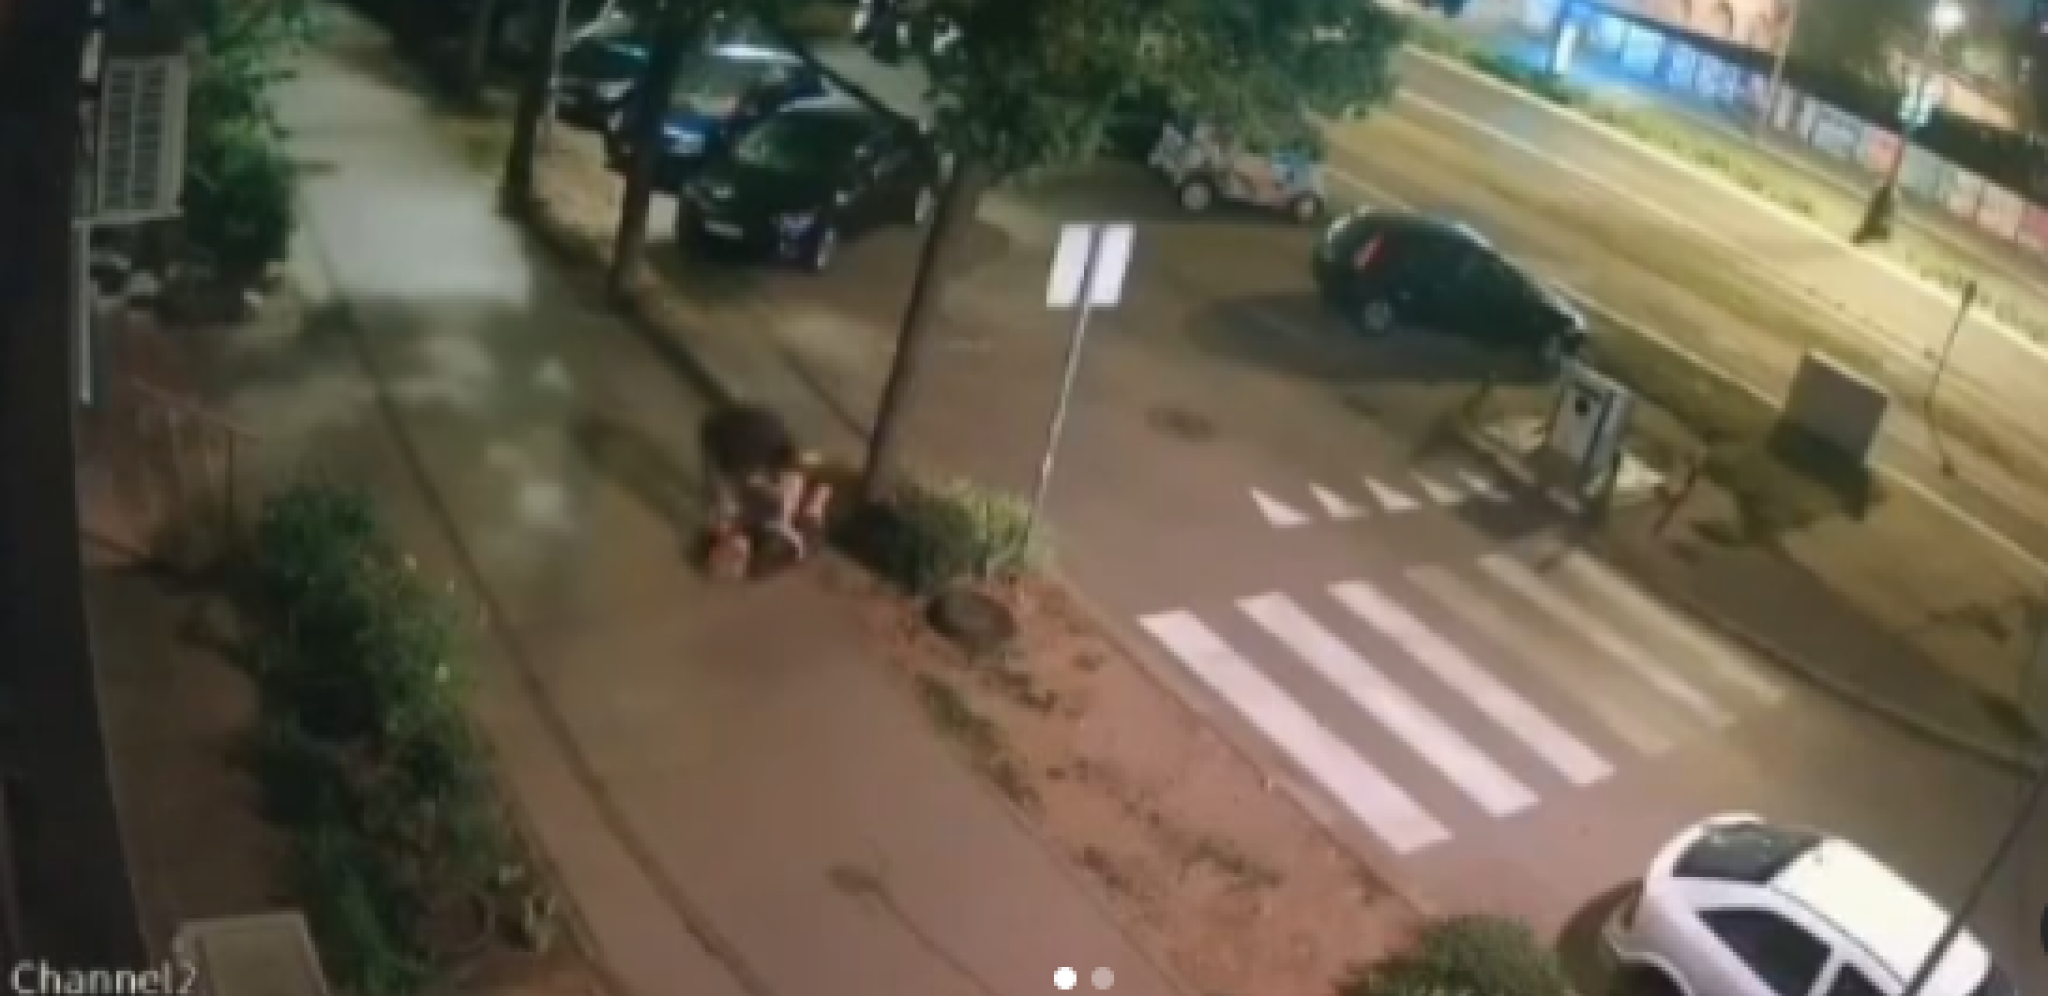 JEZIVA SCENA NA NOVOM BEOGRADU Momak šutira, vuče i bacaka devojku na sred ulice (UZNEMIRUJUĆI VIDEO)